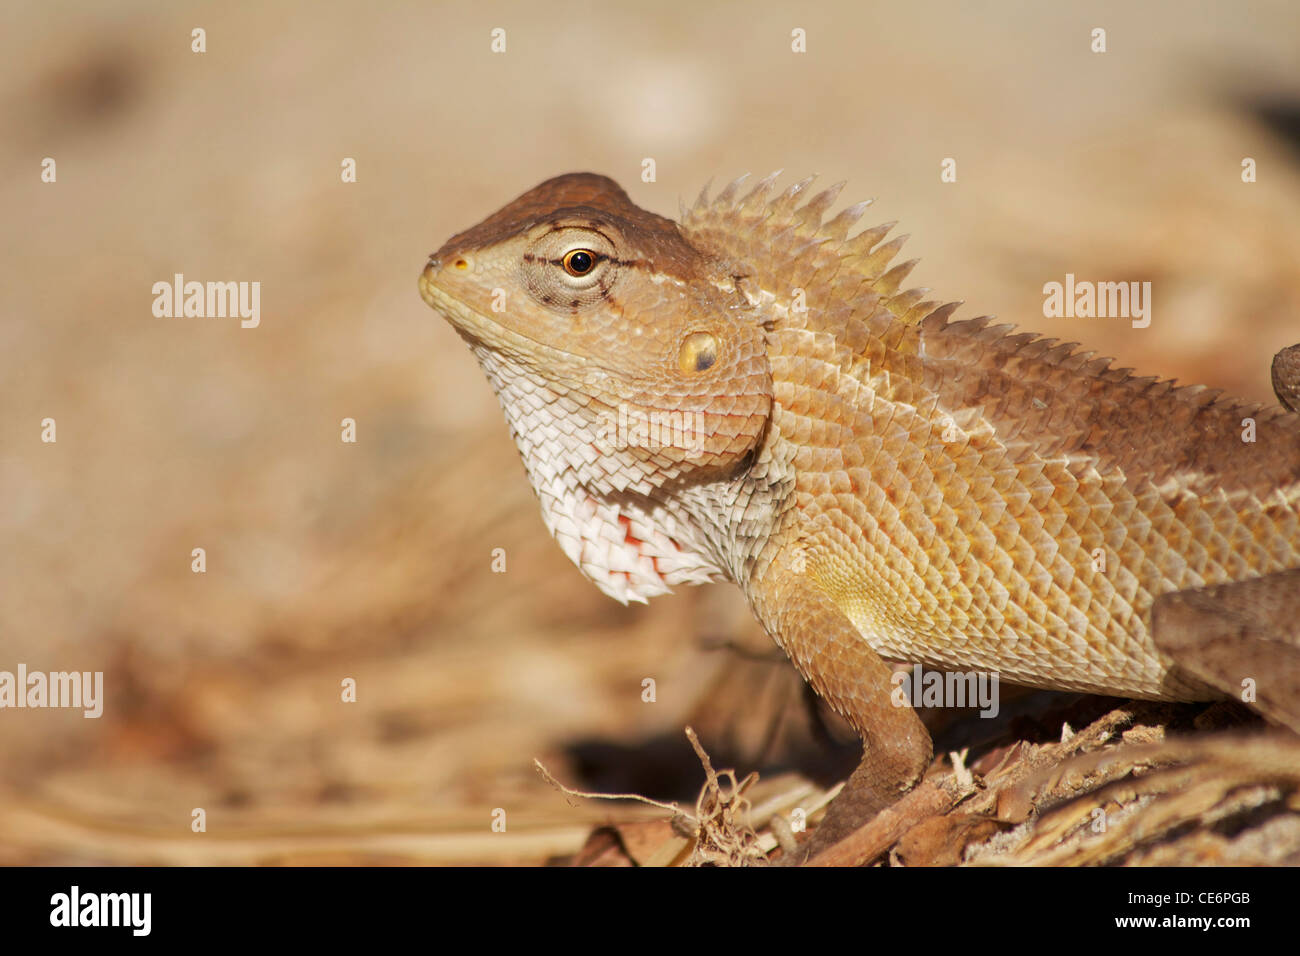 Lizard in Palolem, Goa, India Stock Photo